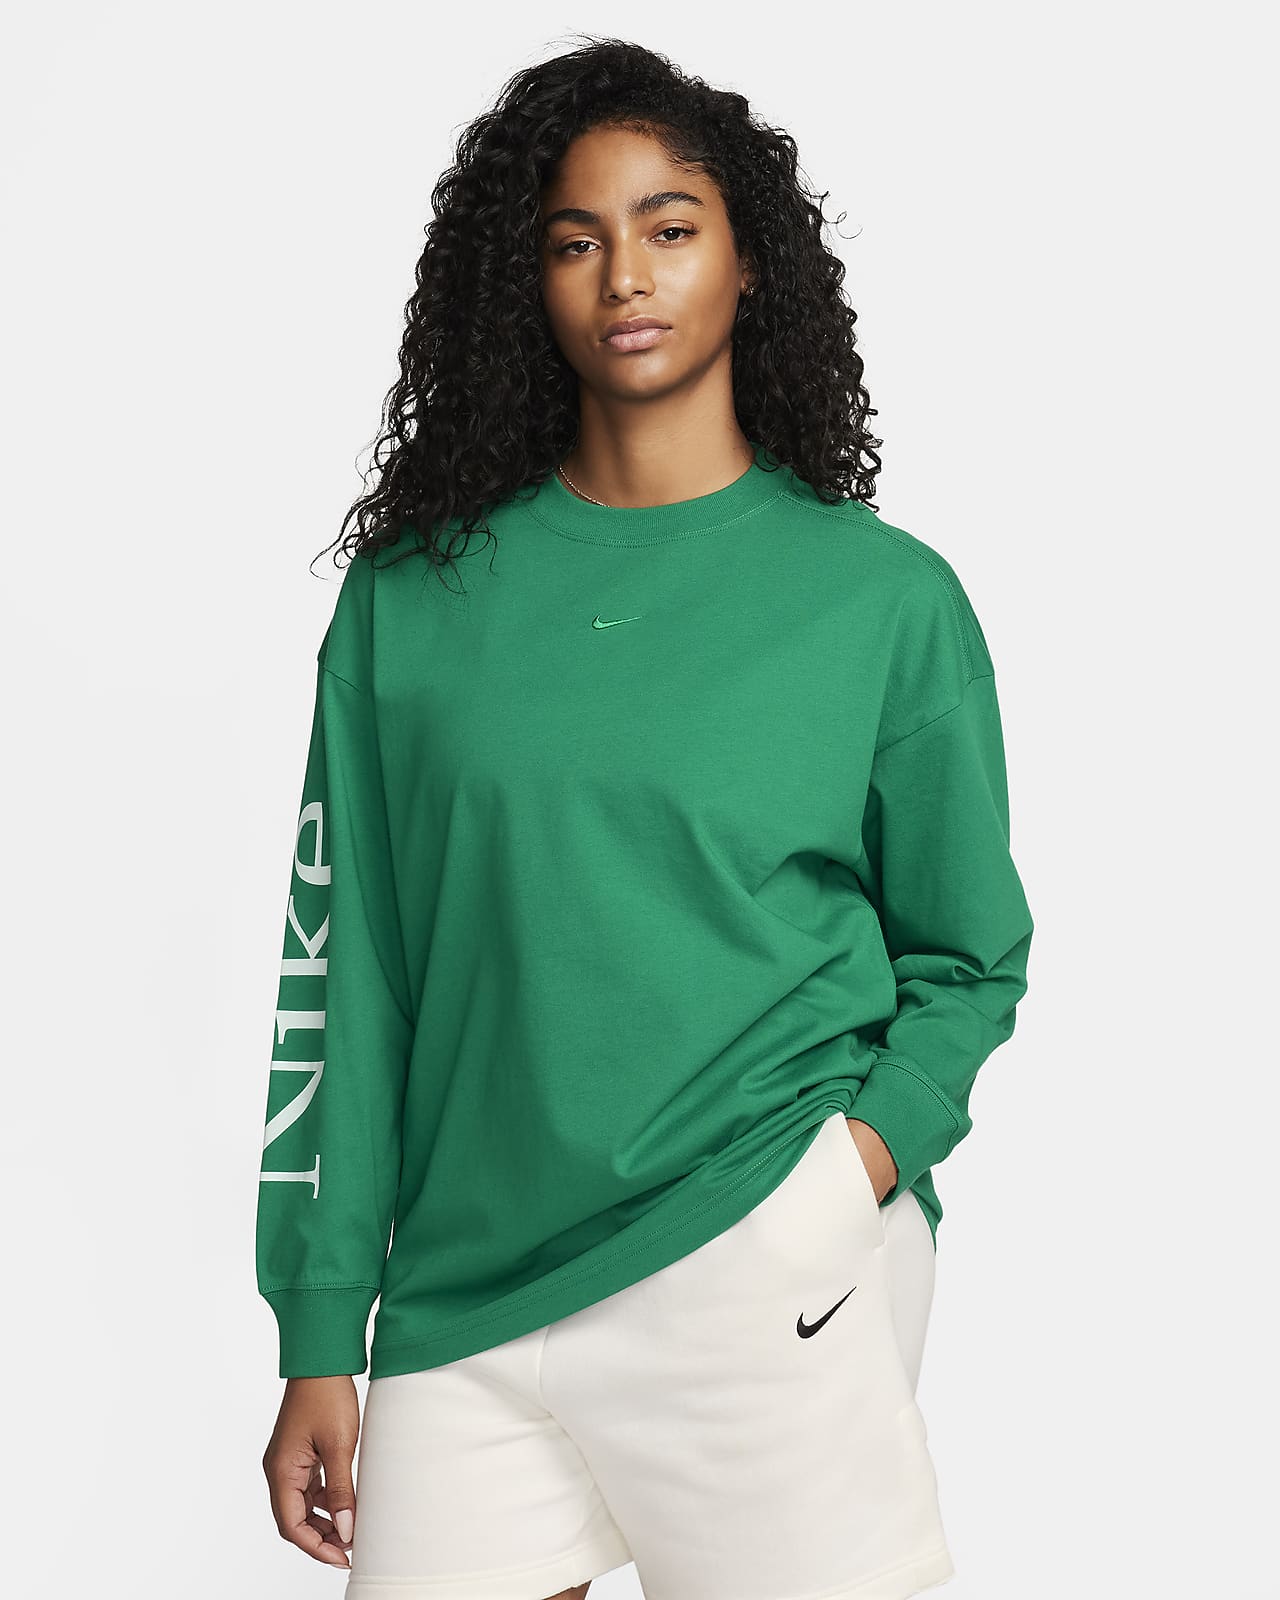 Nike Sportswear Women's Oversized Long-Sleeve Top